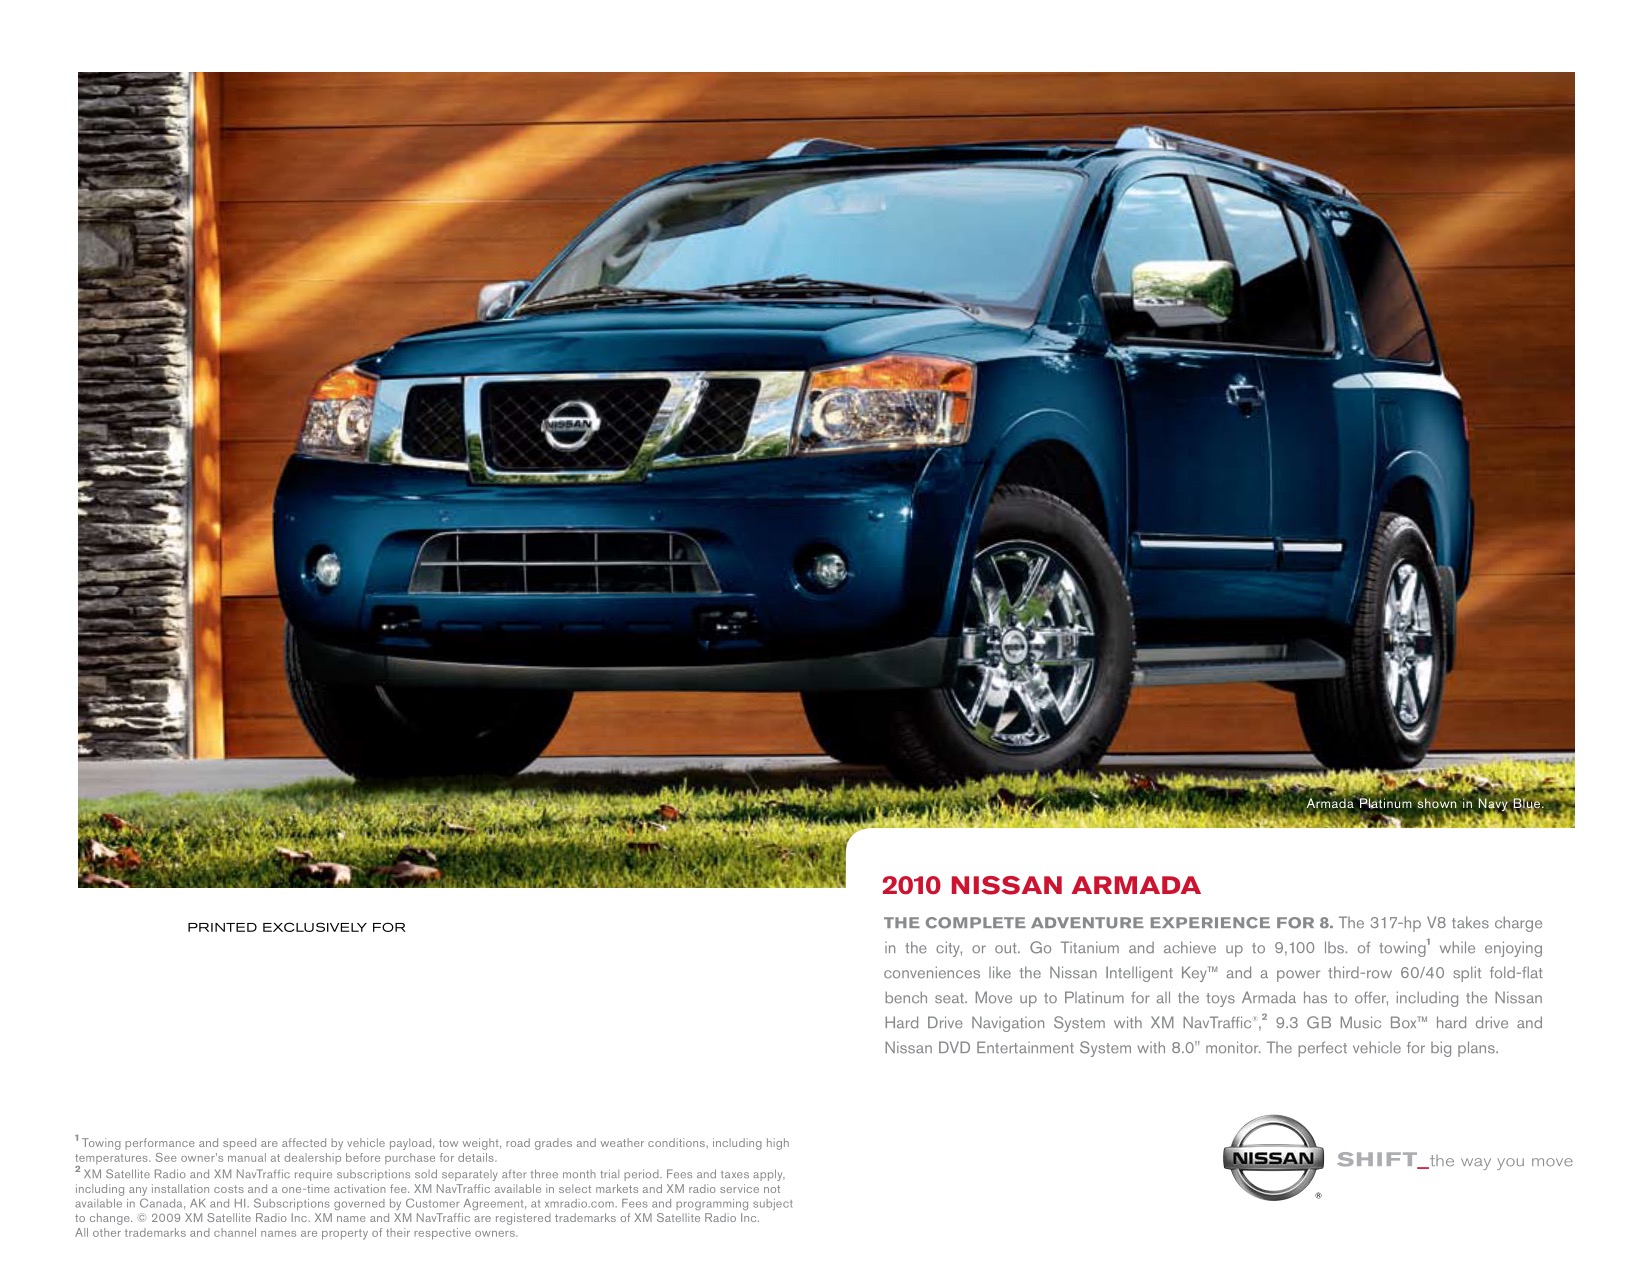 2010 Nissan Armada Brochure